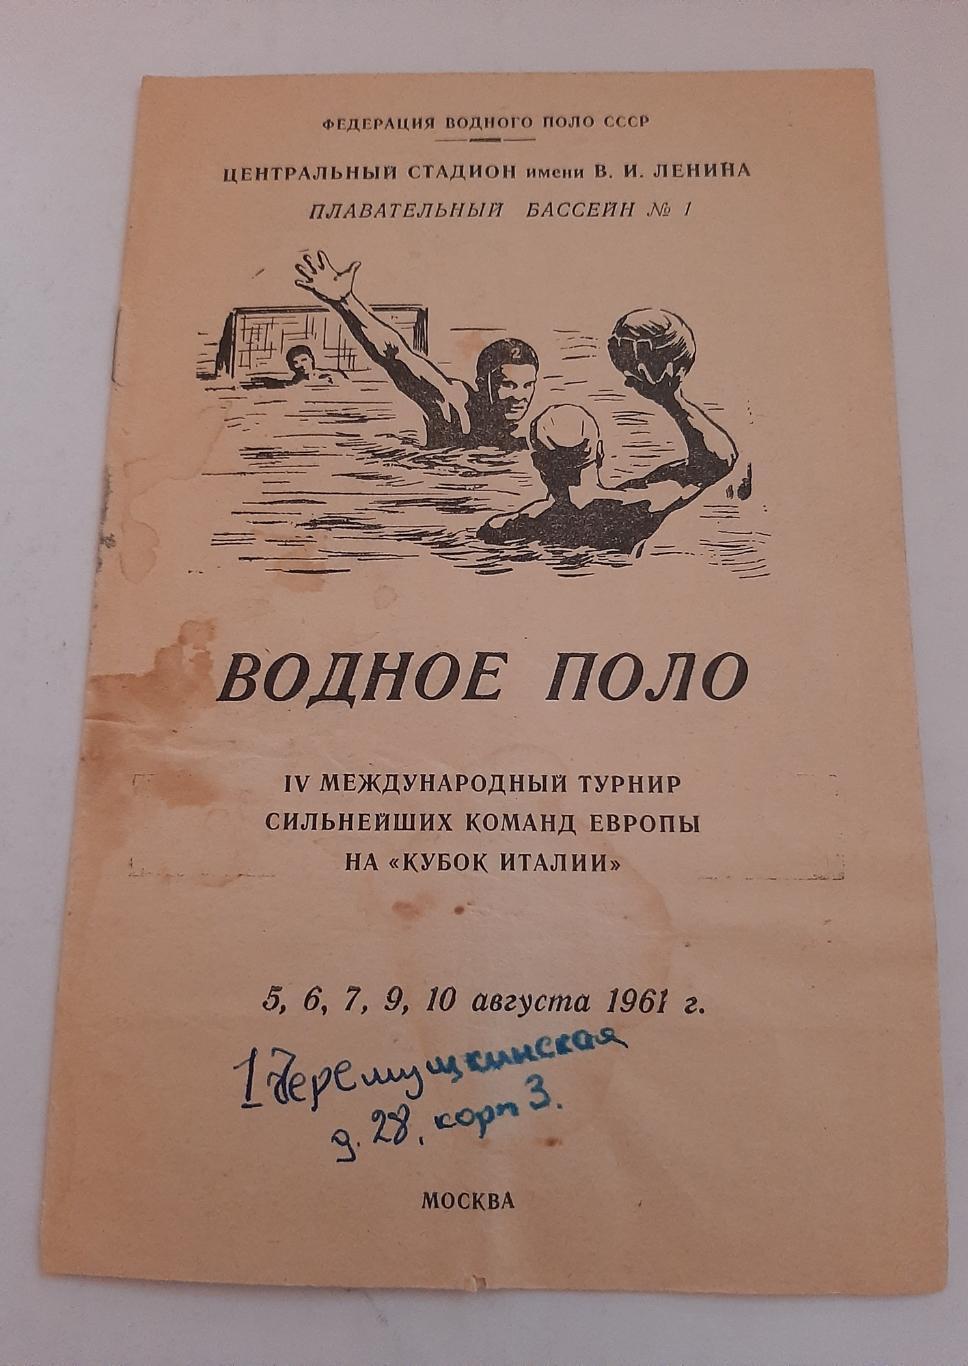 Водное поло Кубок Италии 5-10.08.1961